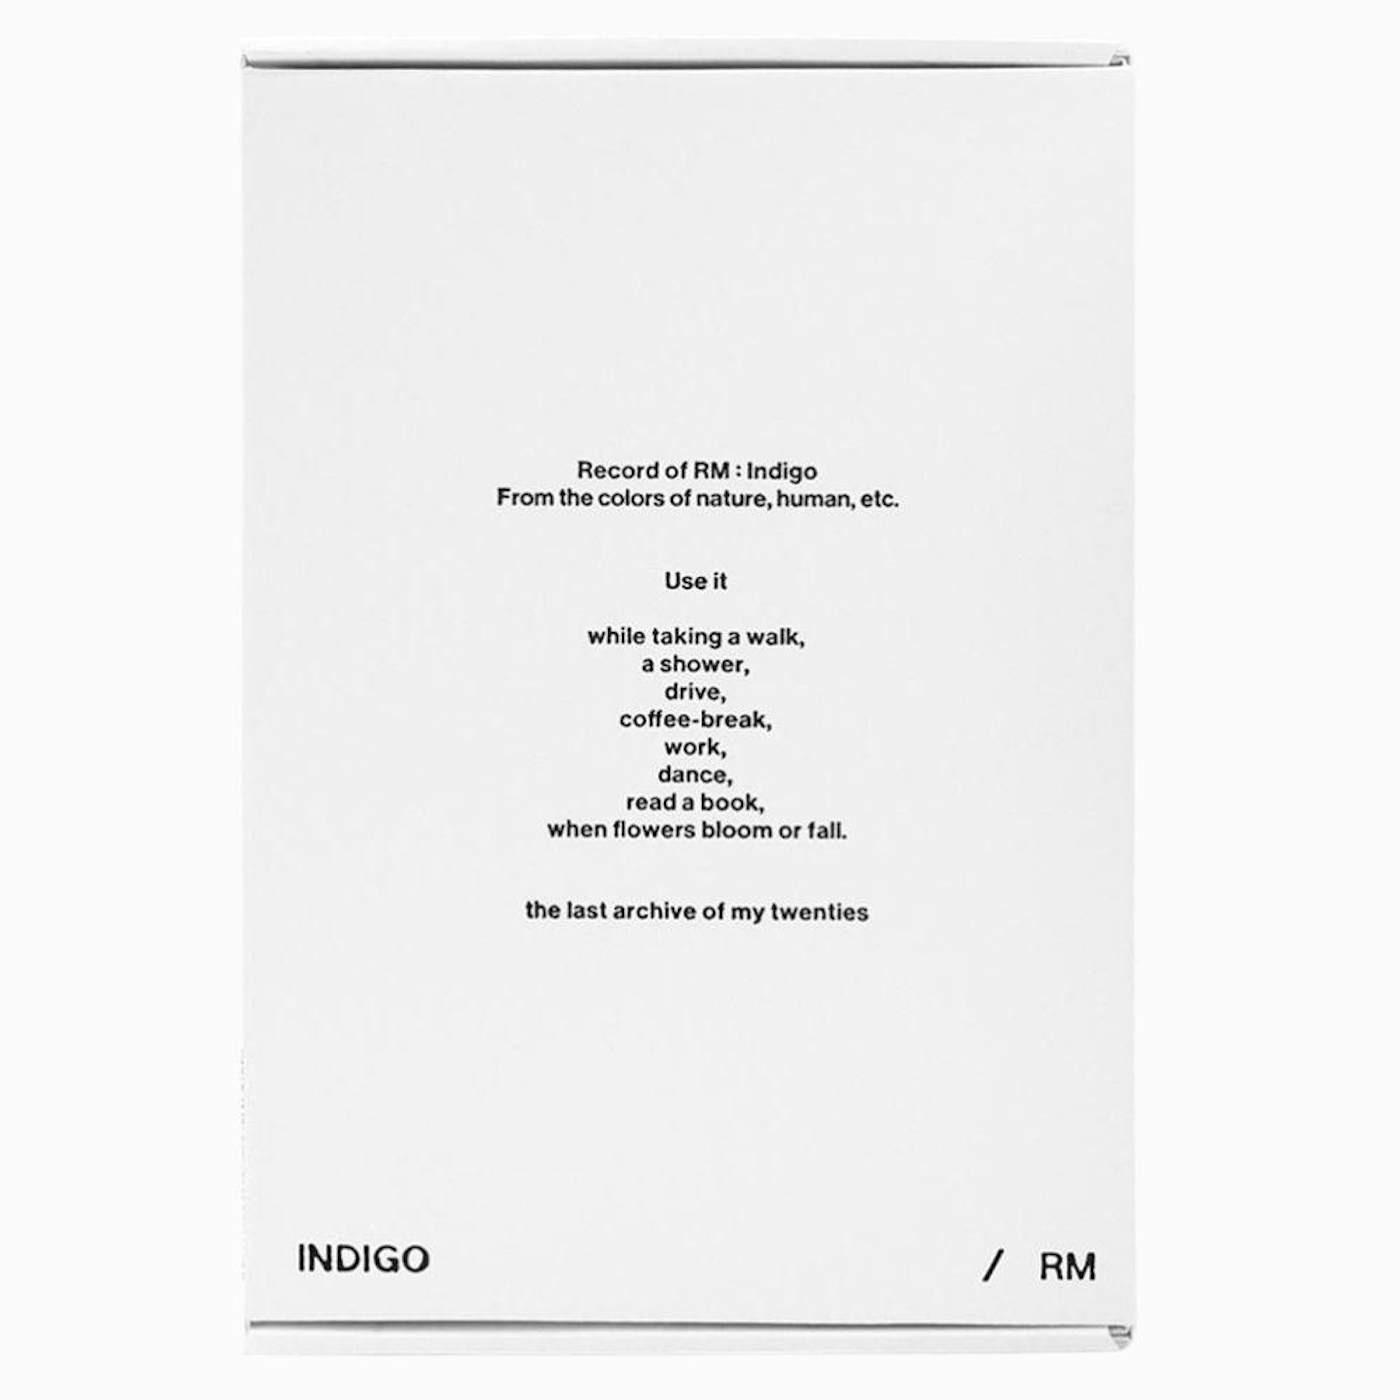 ATEEZ World Ep.Fin : Will - (White) Vinyl Record